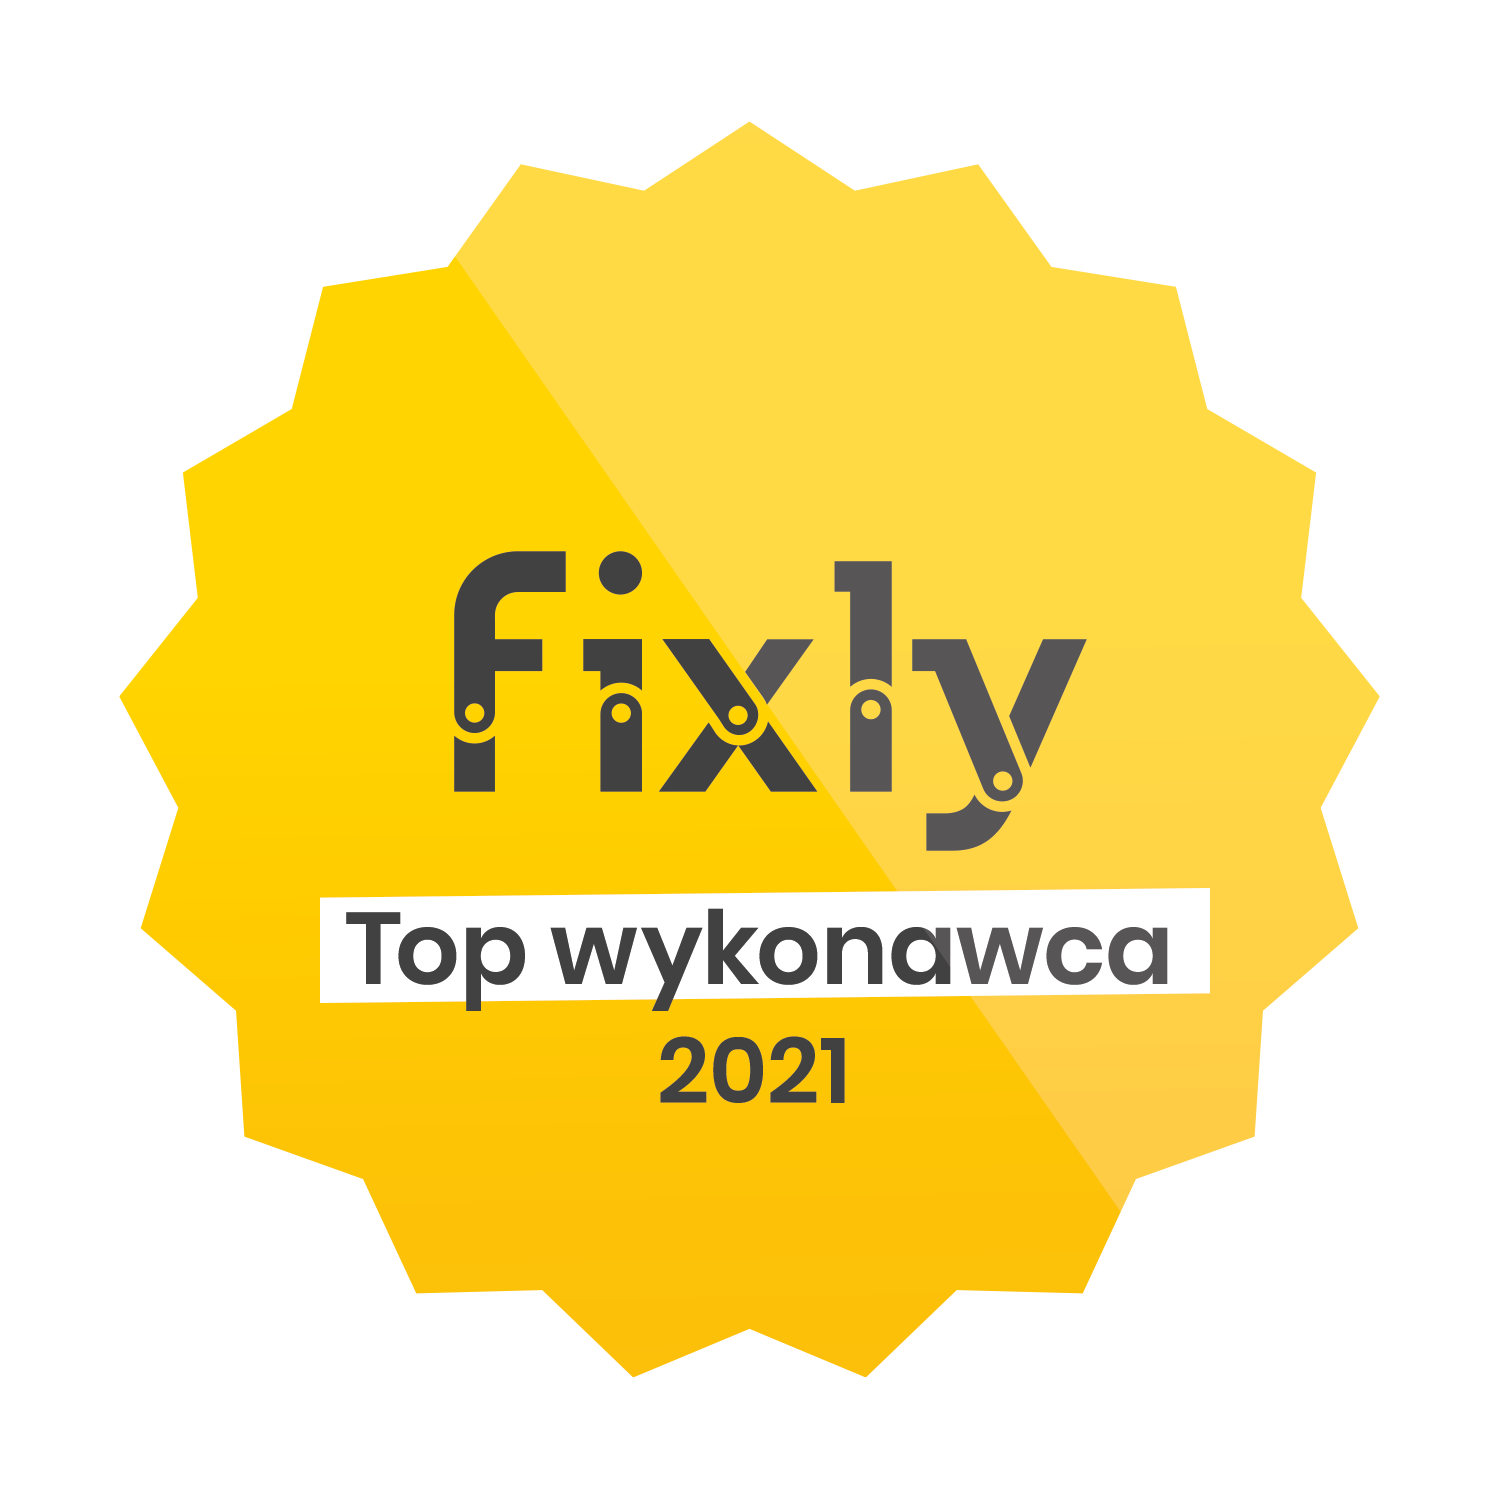 TOP Wykonawca Fixly w 2021 roku